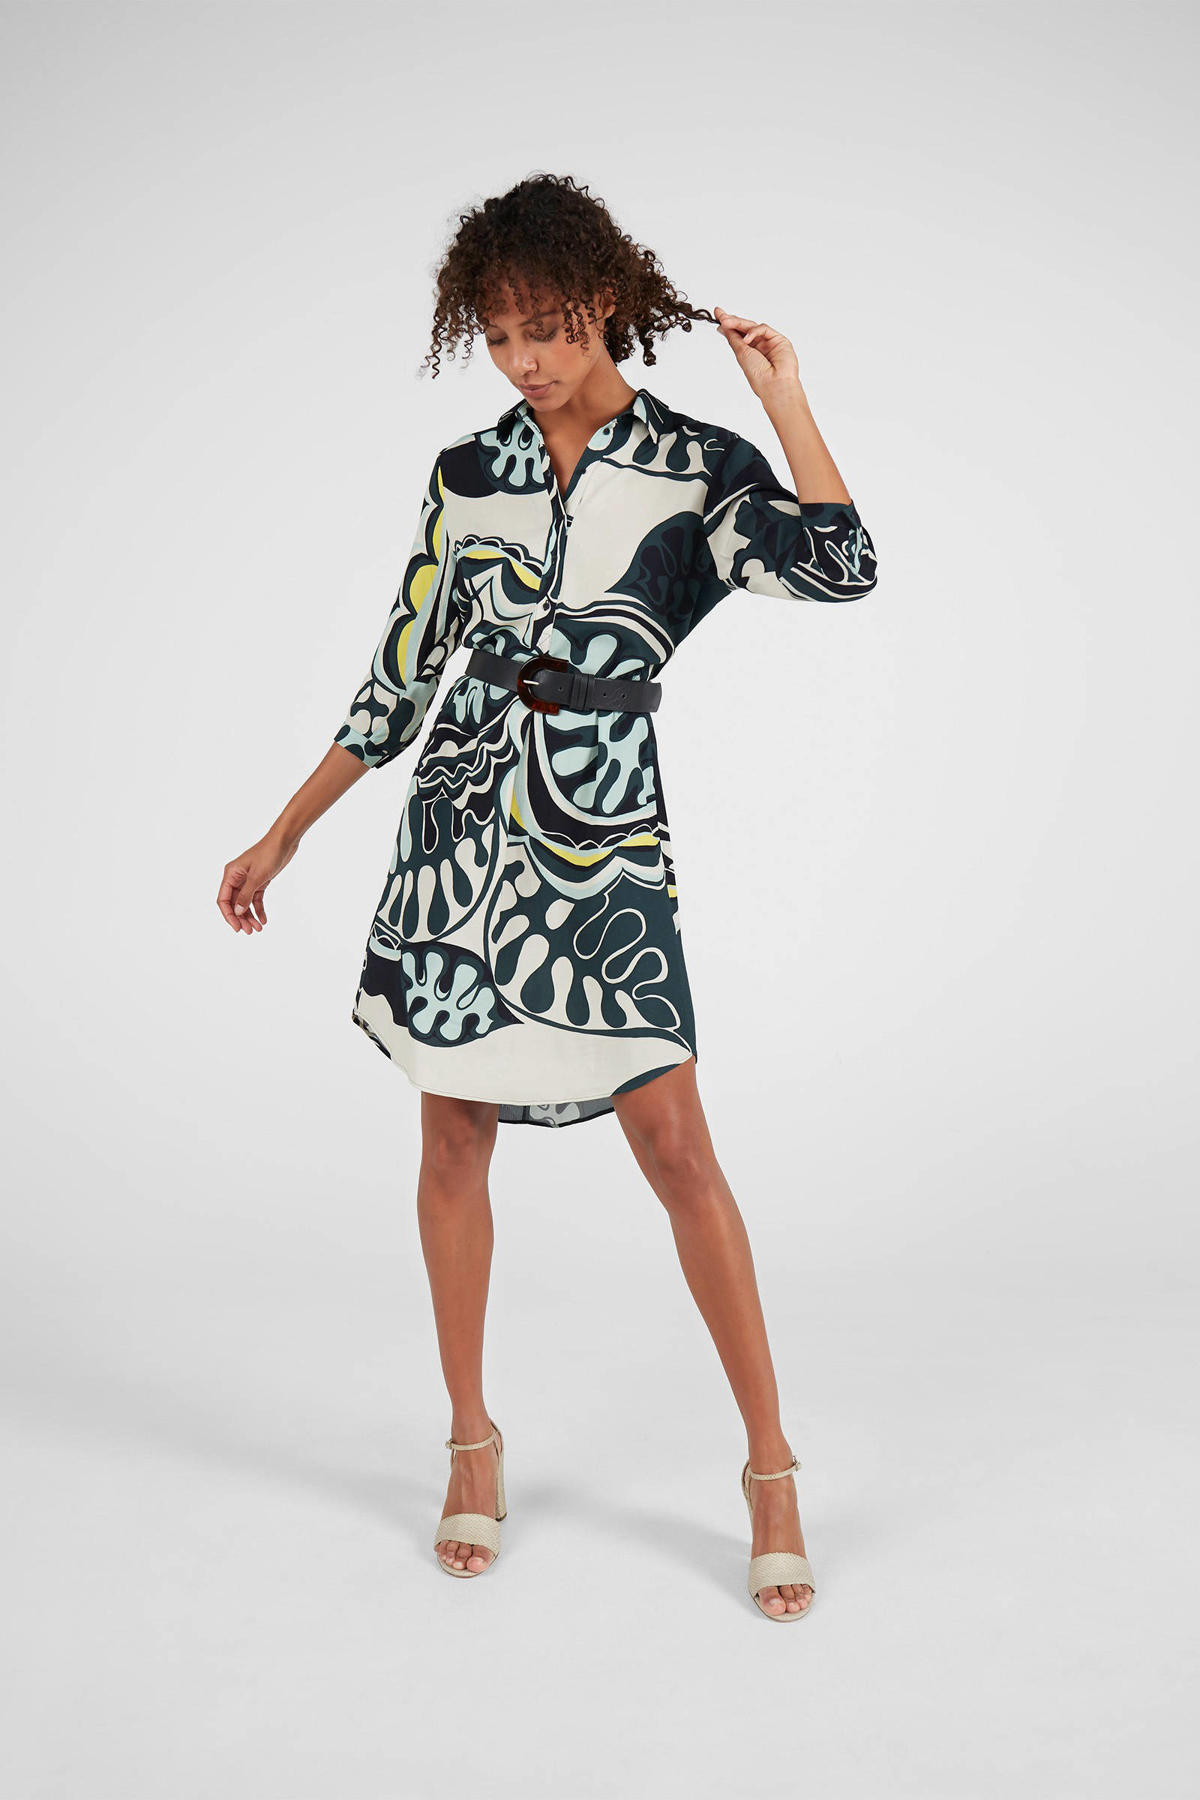 Hassy balans Kaal Expresso jurk met grafische print donkergroen/wit/geel | wehkamp